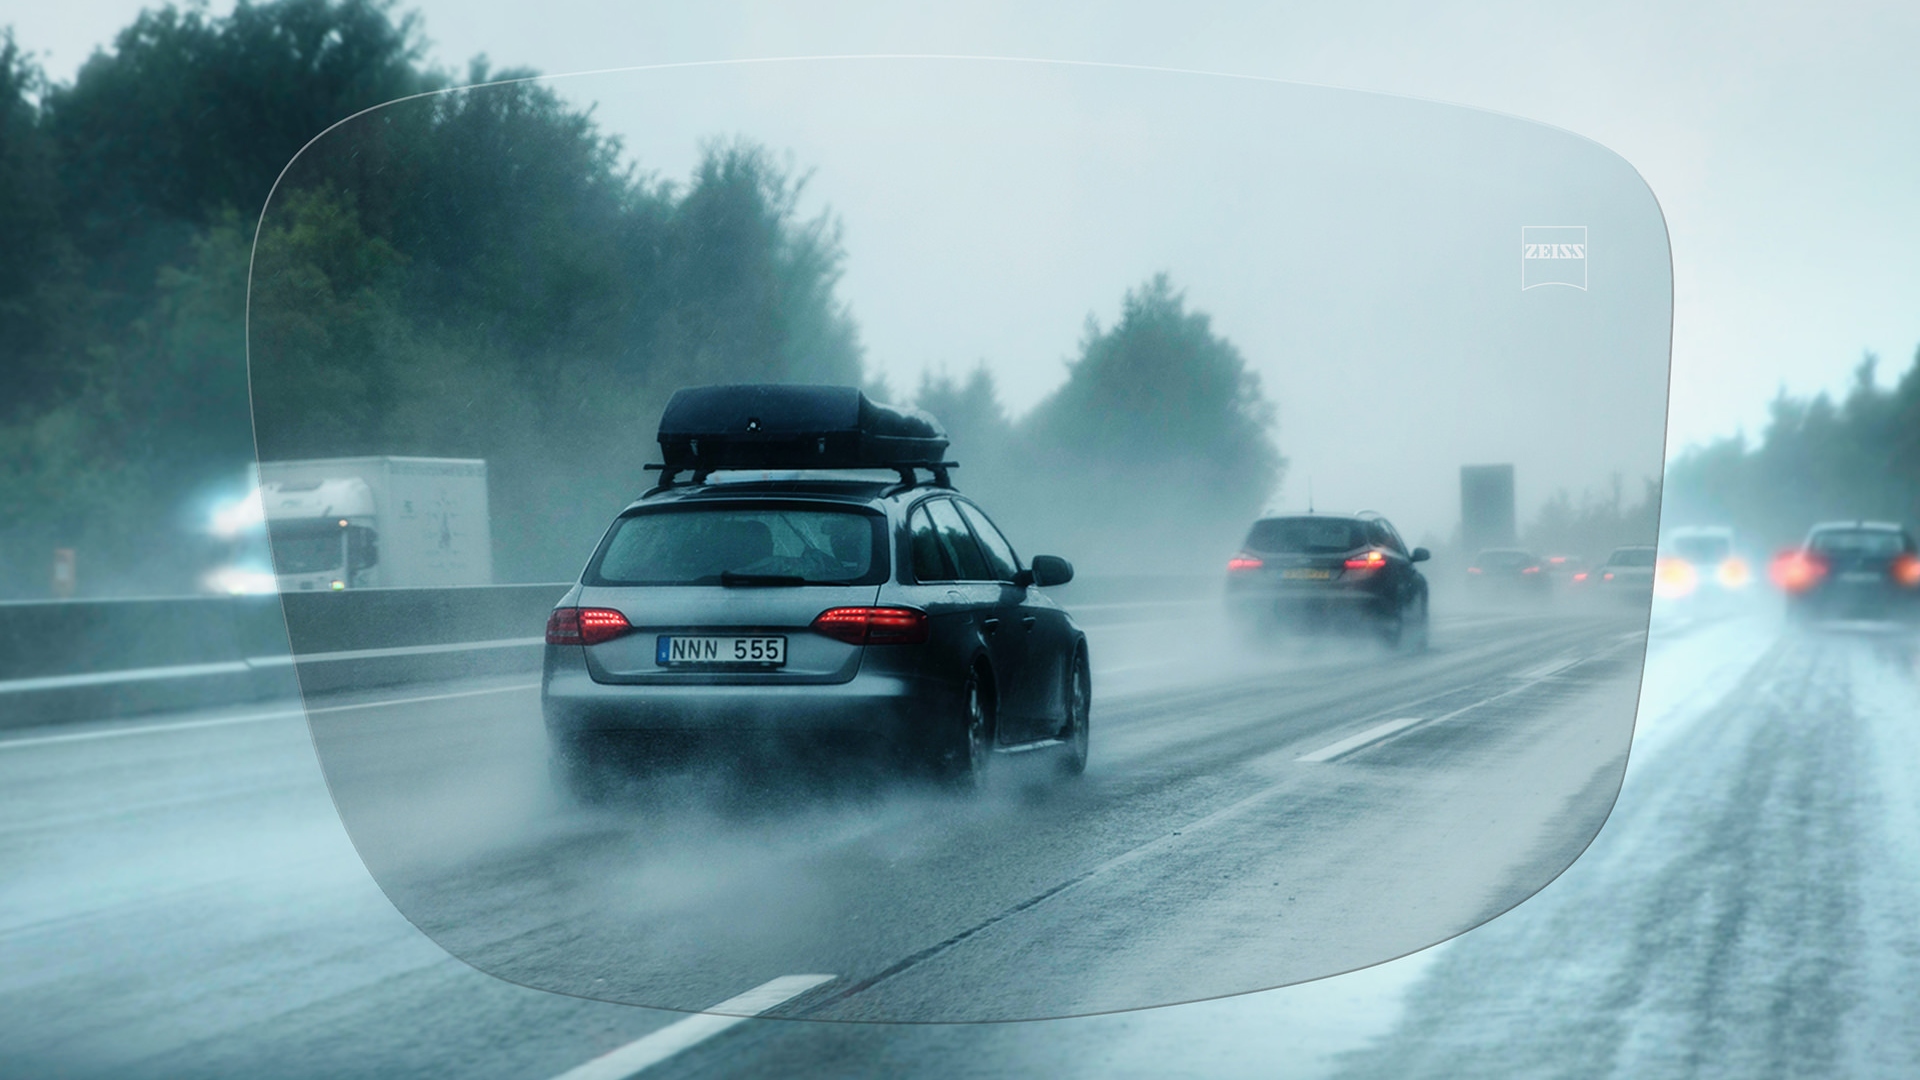 Widok na autostradę w deszczowy dzień przez soczewki jednoogniskowe ZEISS DriveSafe Individual 